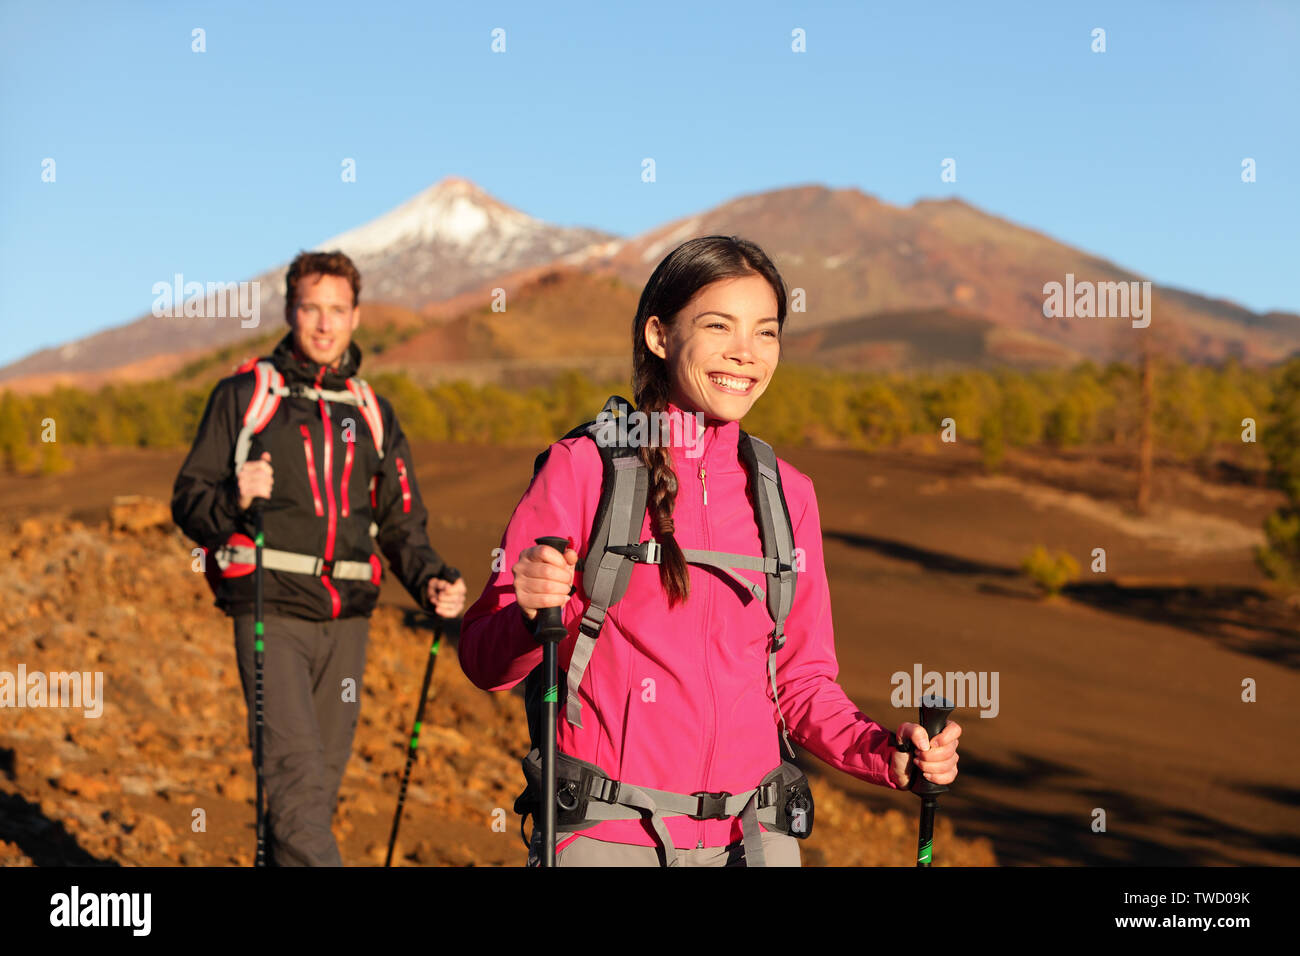 Menschen wandern - gesunden, aktiven Lebensstil Paar. Wanderer Wandern in wunderschöner Natur Landschaft. Frau und Mann Wanderer wandern während der Wanderung auf den Vulkan Teide, Teneriffa, Kanarische Inseln, Spanien. Stockfoto